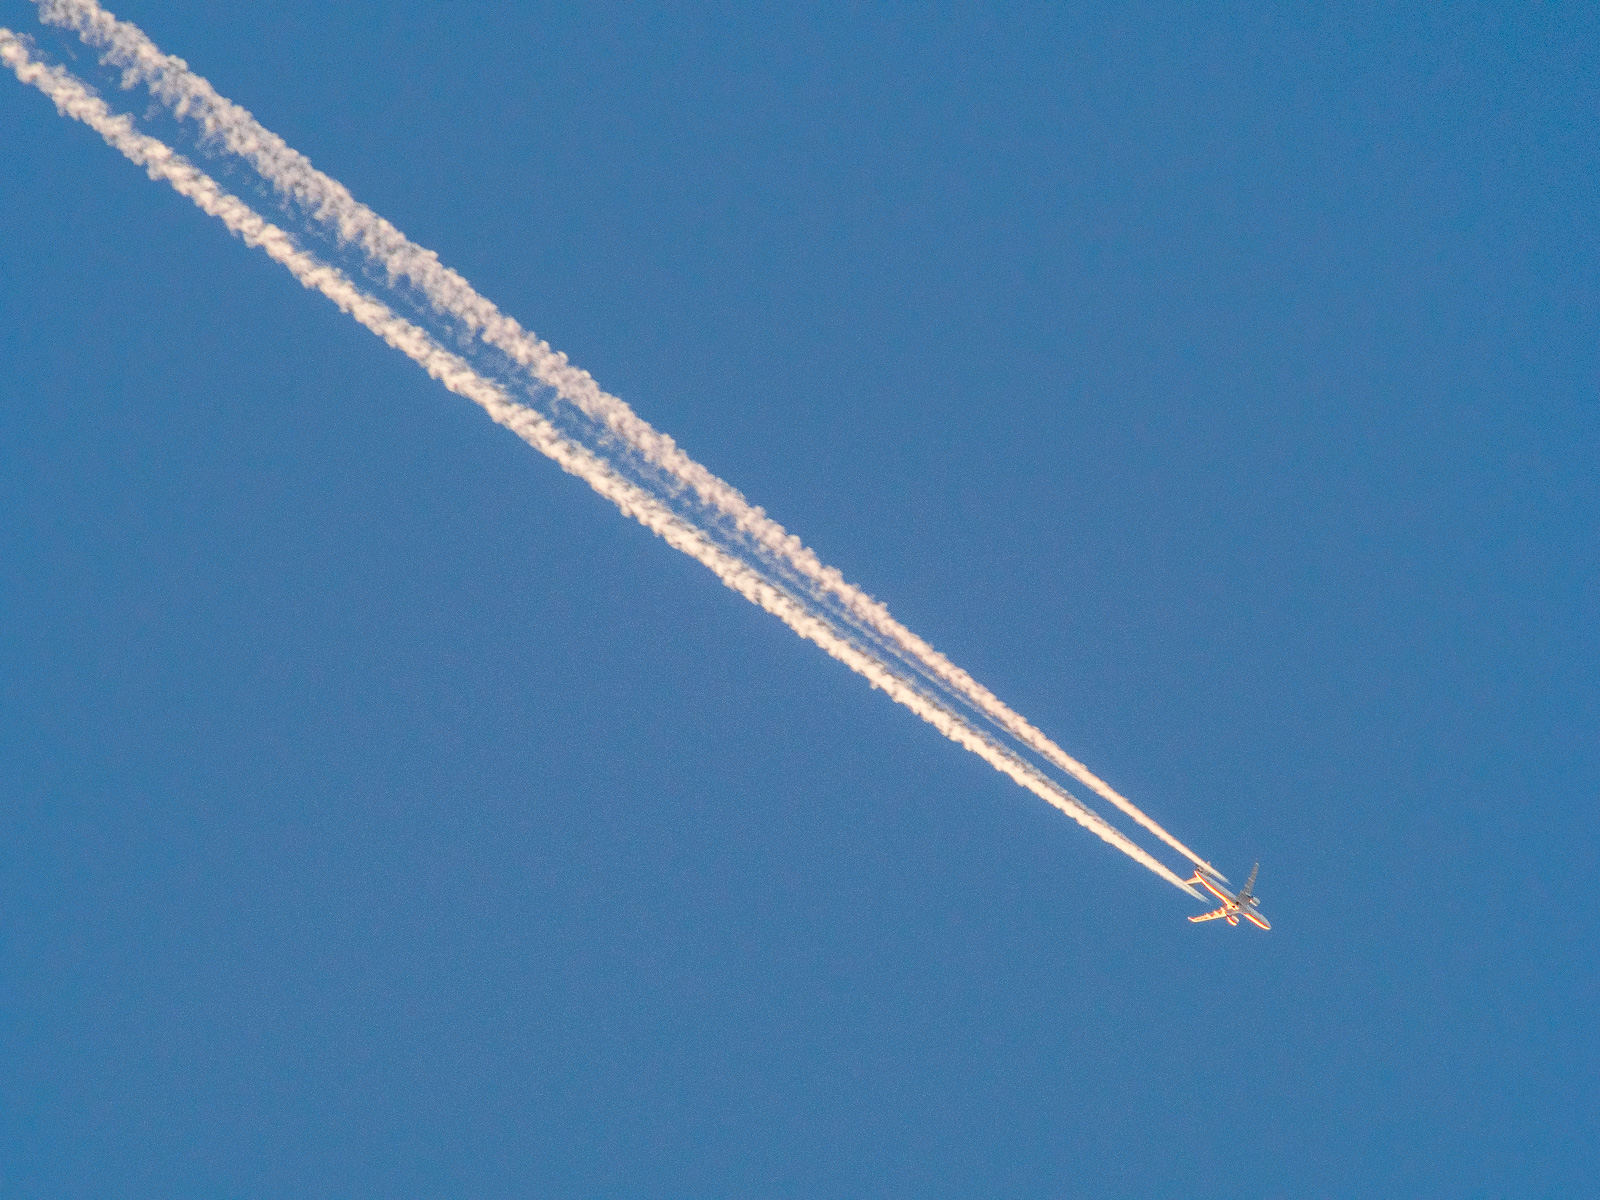 vor intensiv blauem Himmel der von der Sonne beleuchtete Kondensstreifen eines Flugzeugs, der sich von oben links diagonal durchs Bild zieht. Das Flugzeug fliegt auf die rechte untere Ecke zu und ist kurz davor.